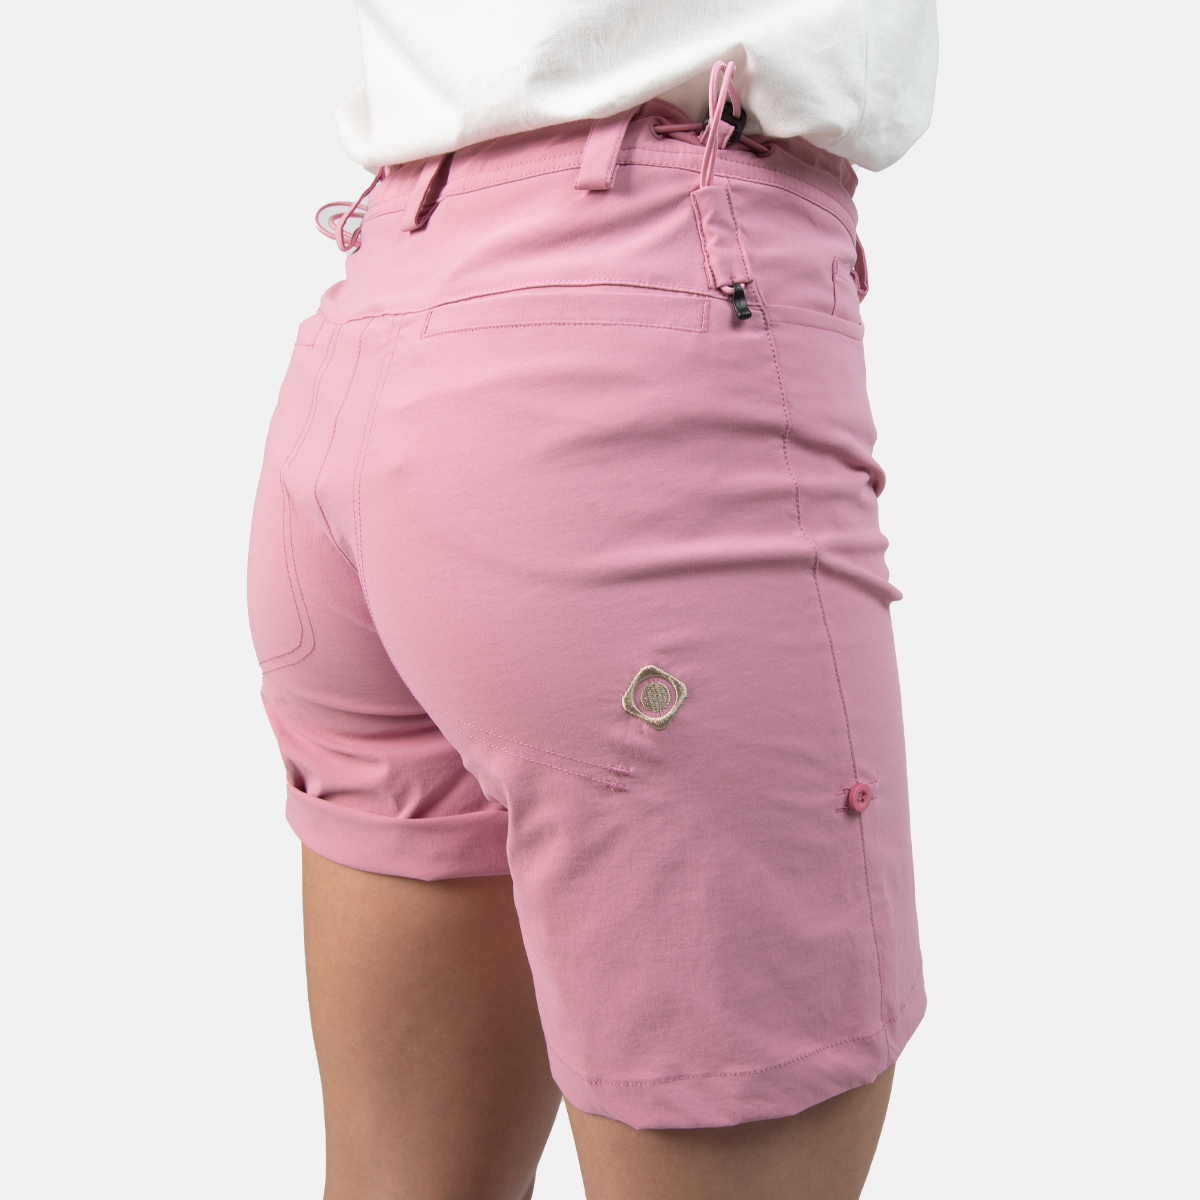 Pantalón rosa Escalada y Trekking Mujer Saona Gerbera. Compra online